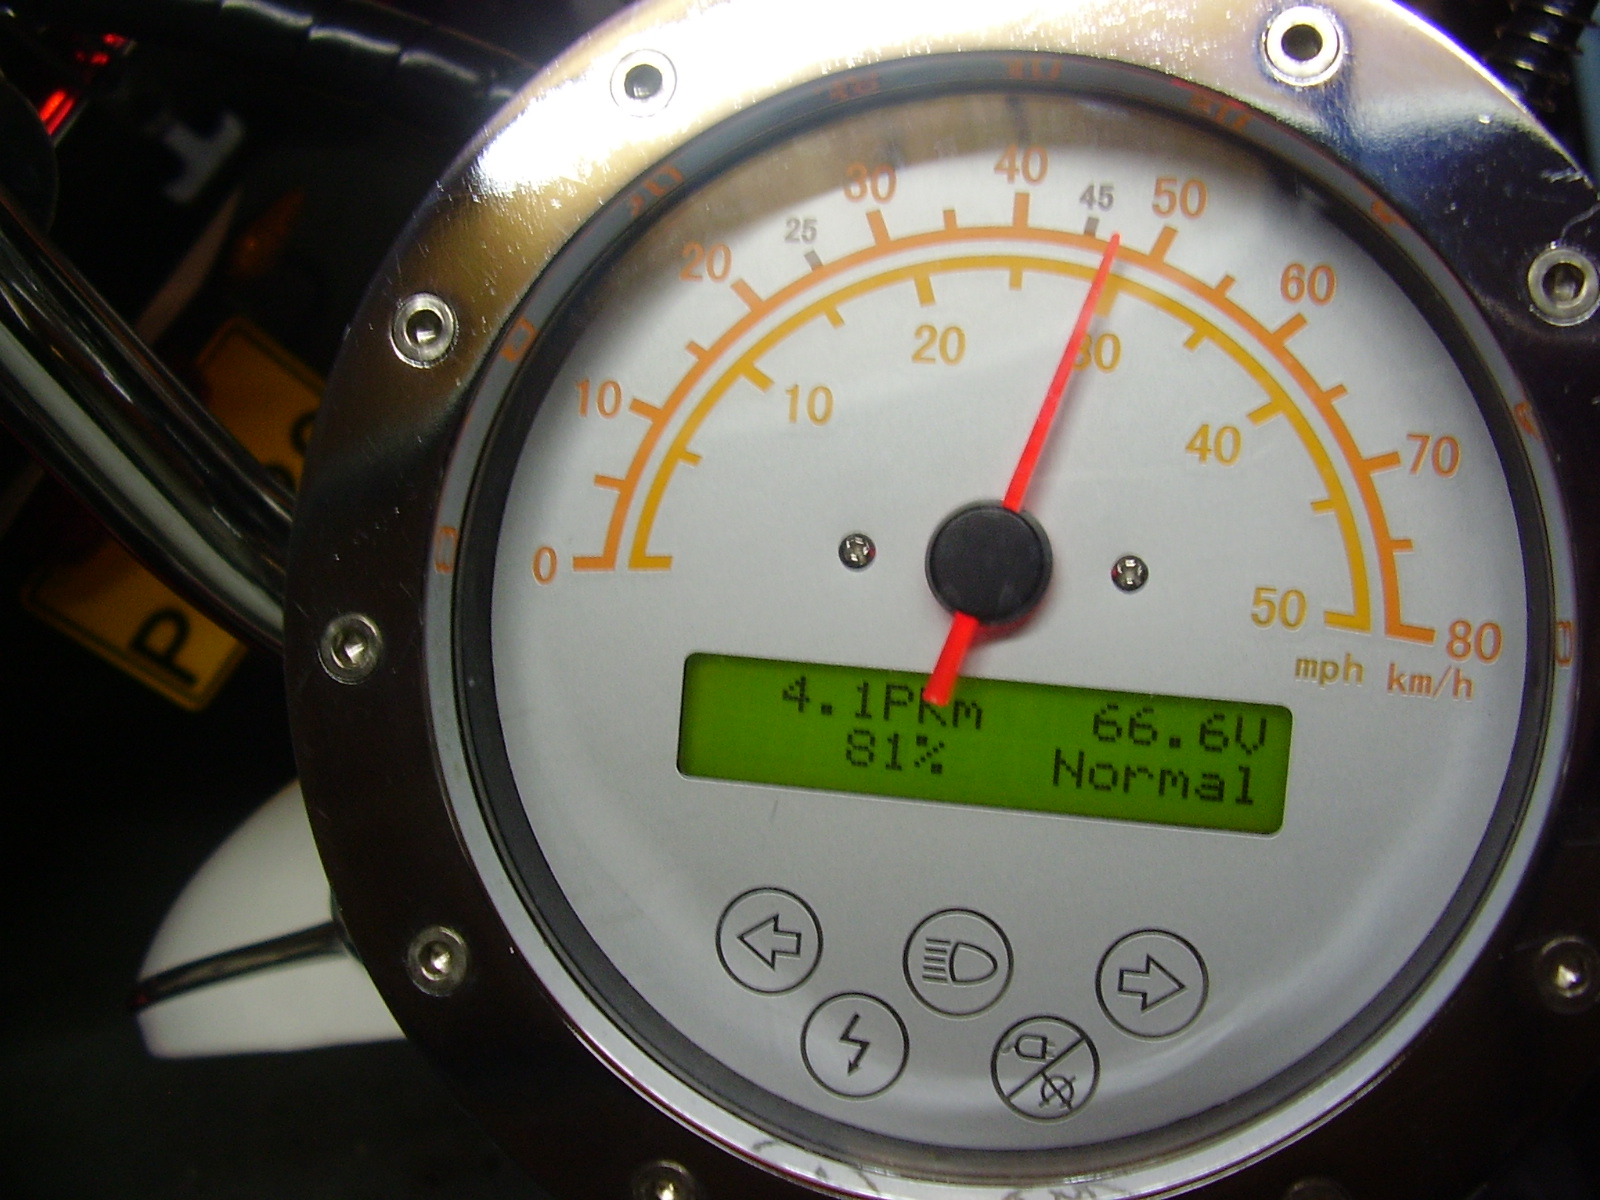 Como a mota estava no descanso central, a velocidade está uns 10Km/h maior.